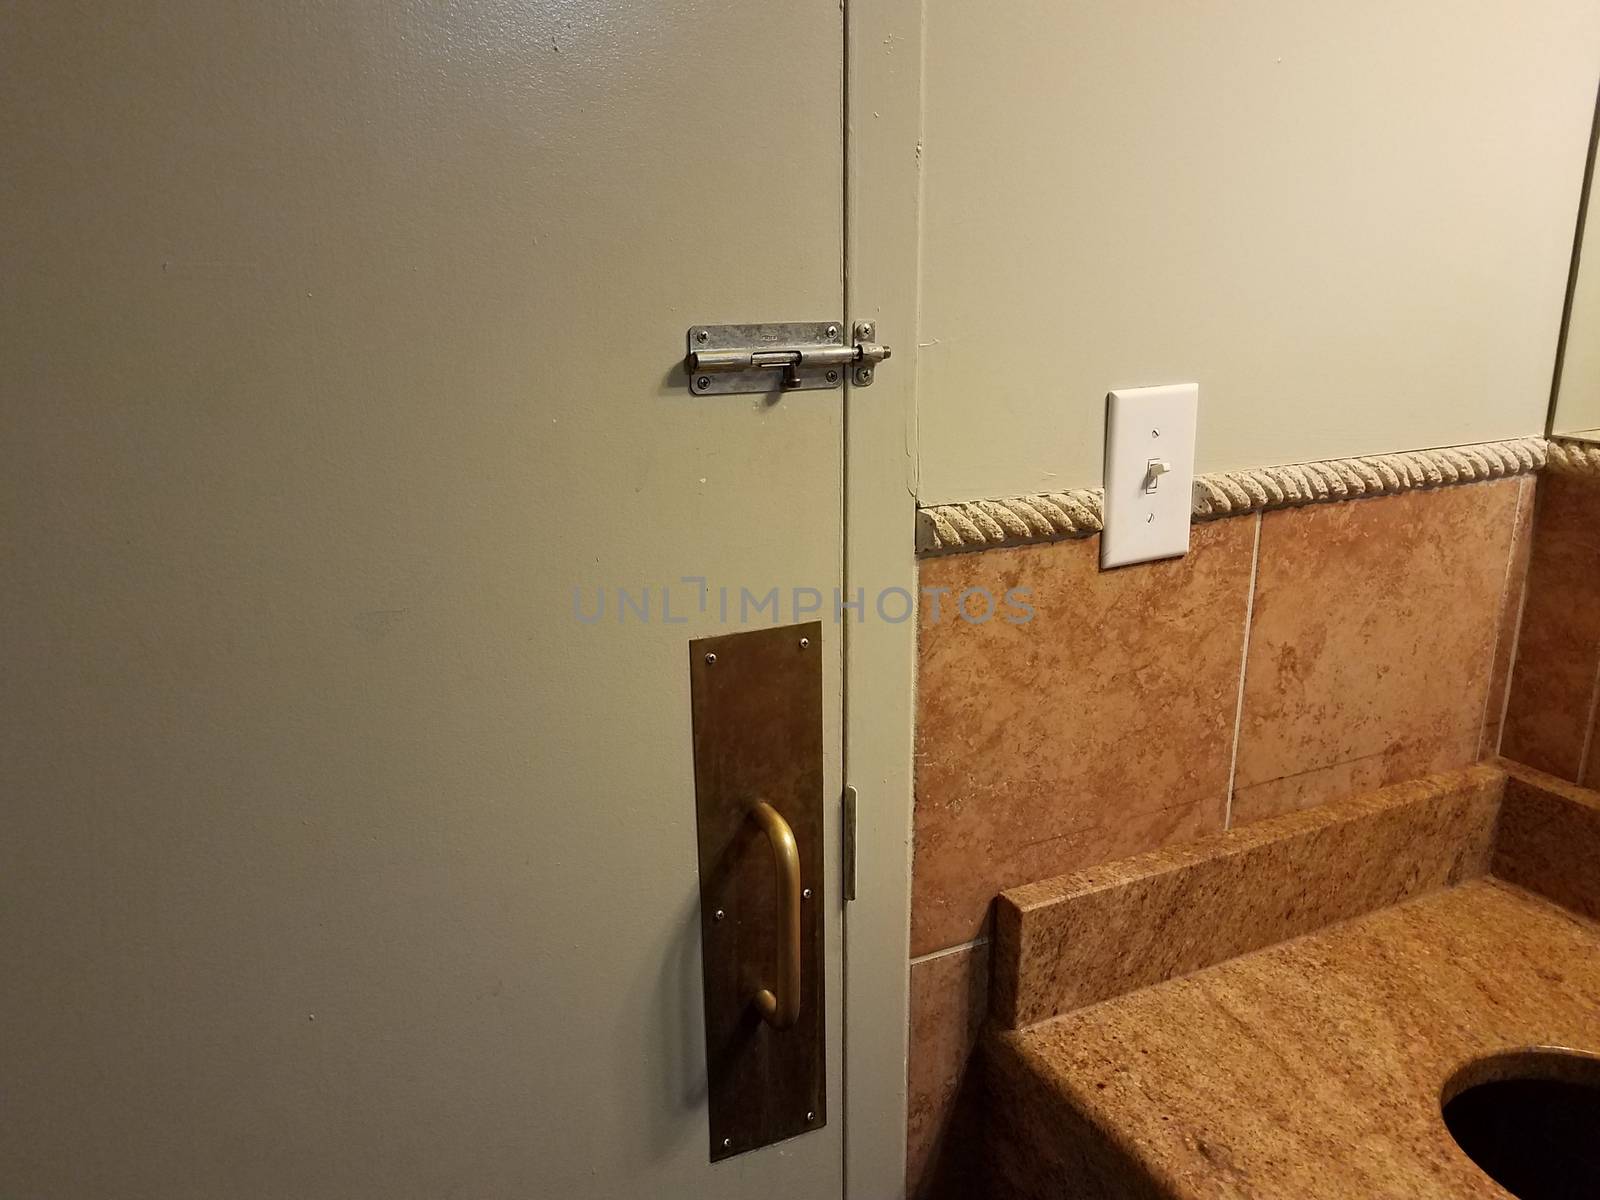 locked bathroom or restroom door with metal handle by stockphotofan1